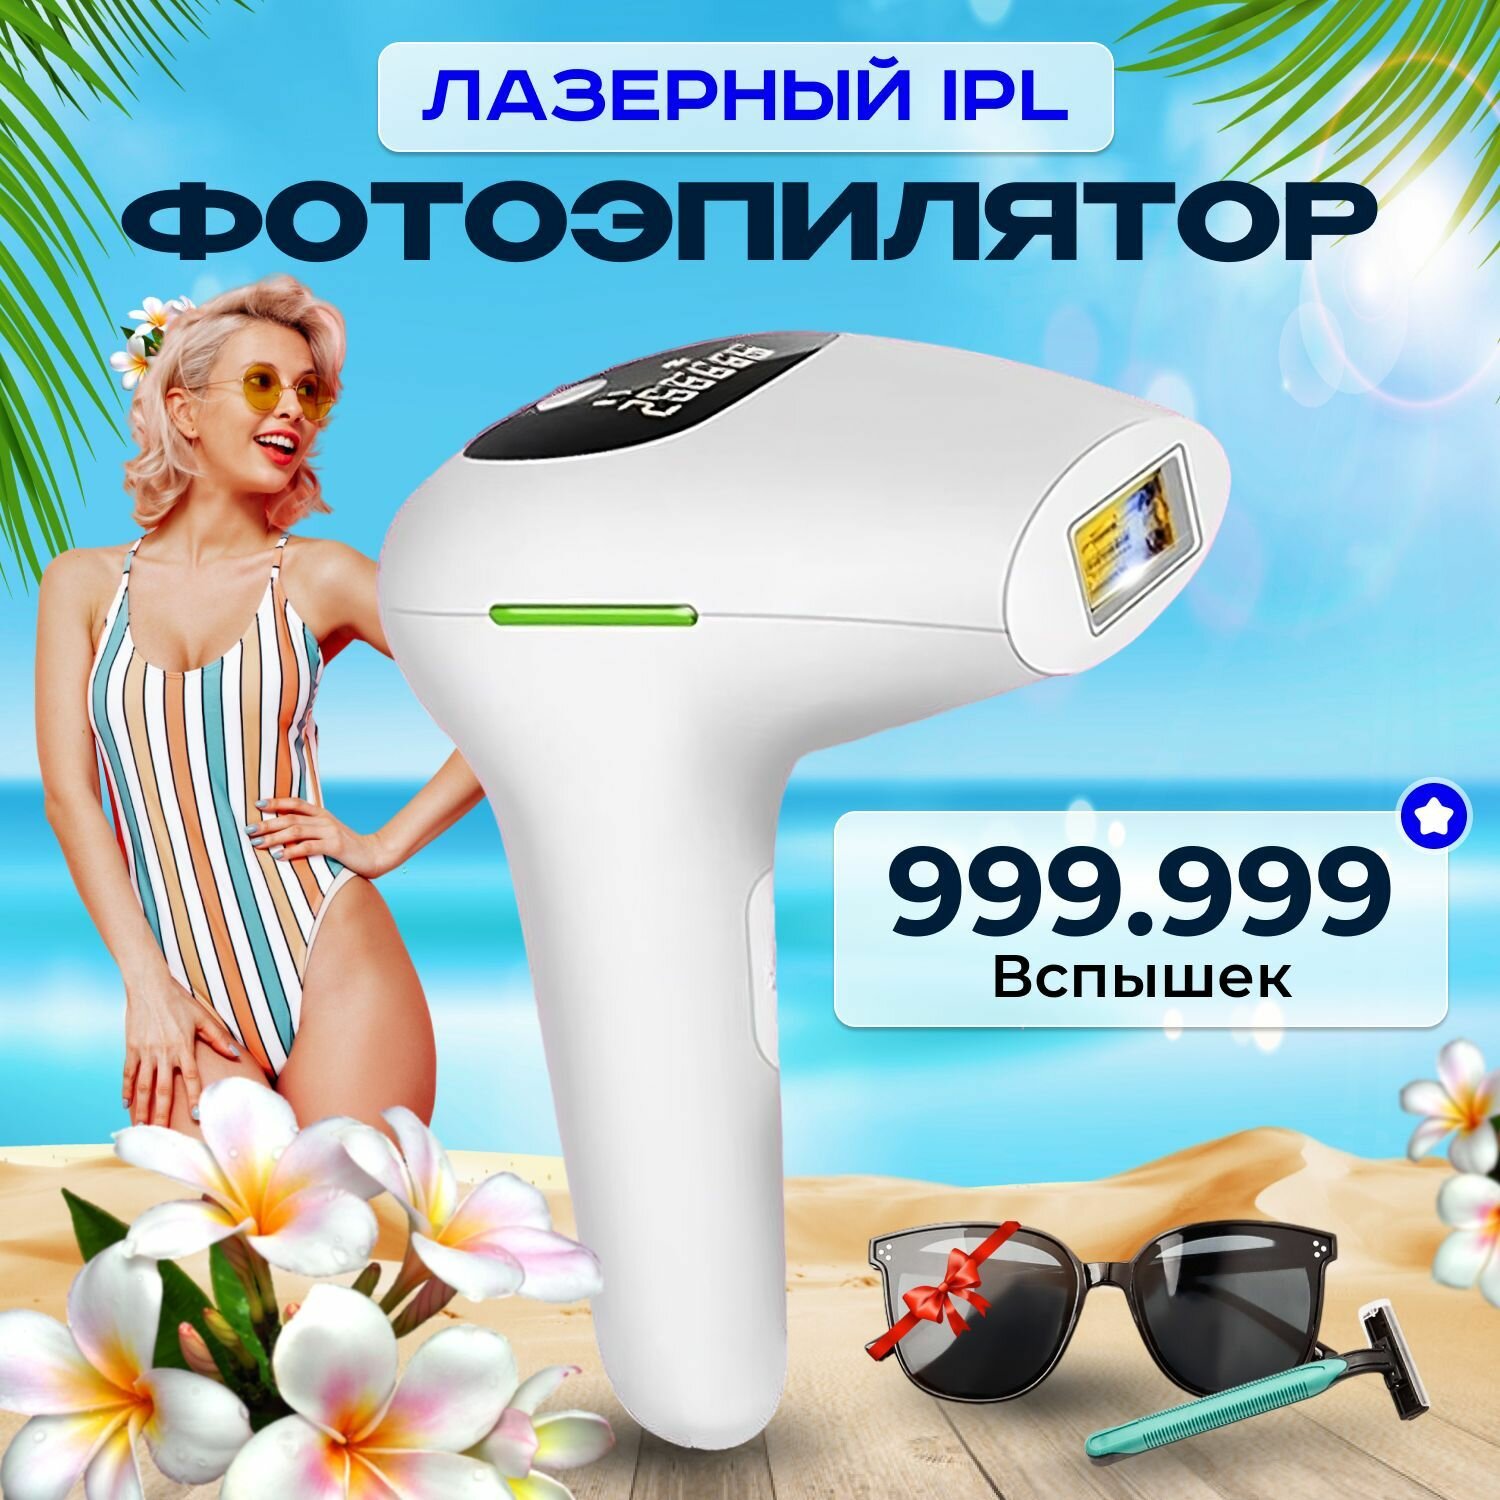 Фотоэпилятор для удаления волос, Лазерный эпилятор женский для тела с охлаждением, 999999 вспышек